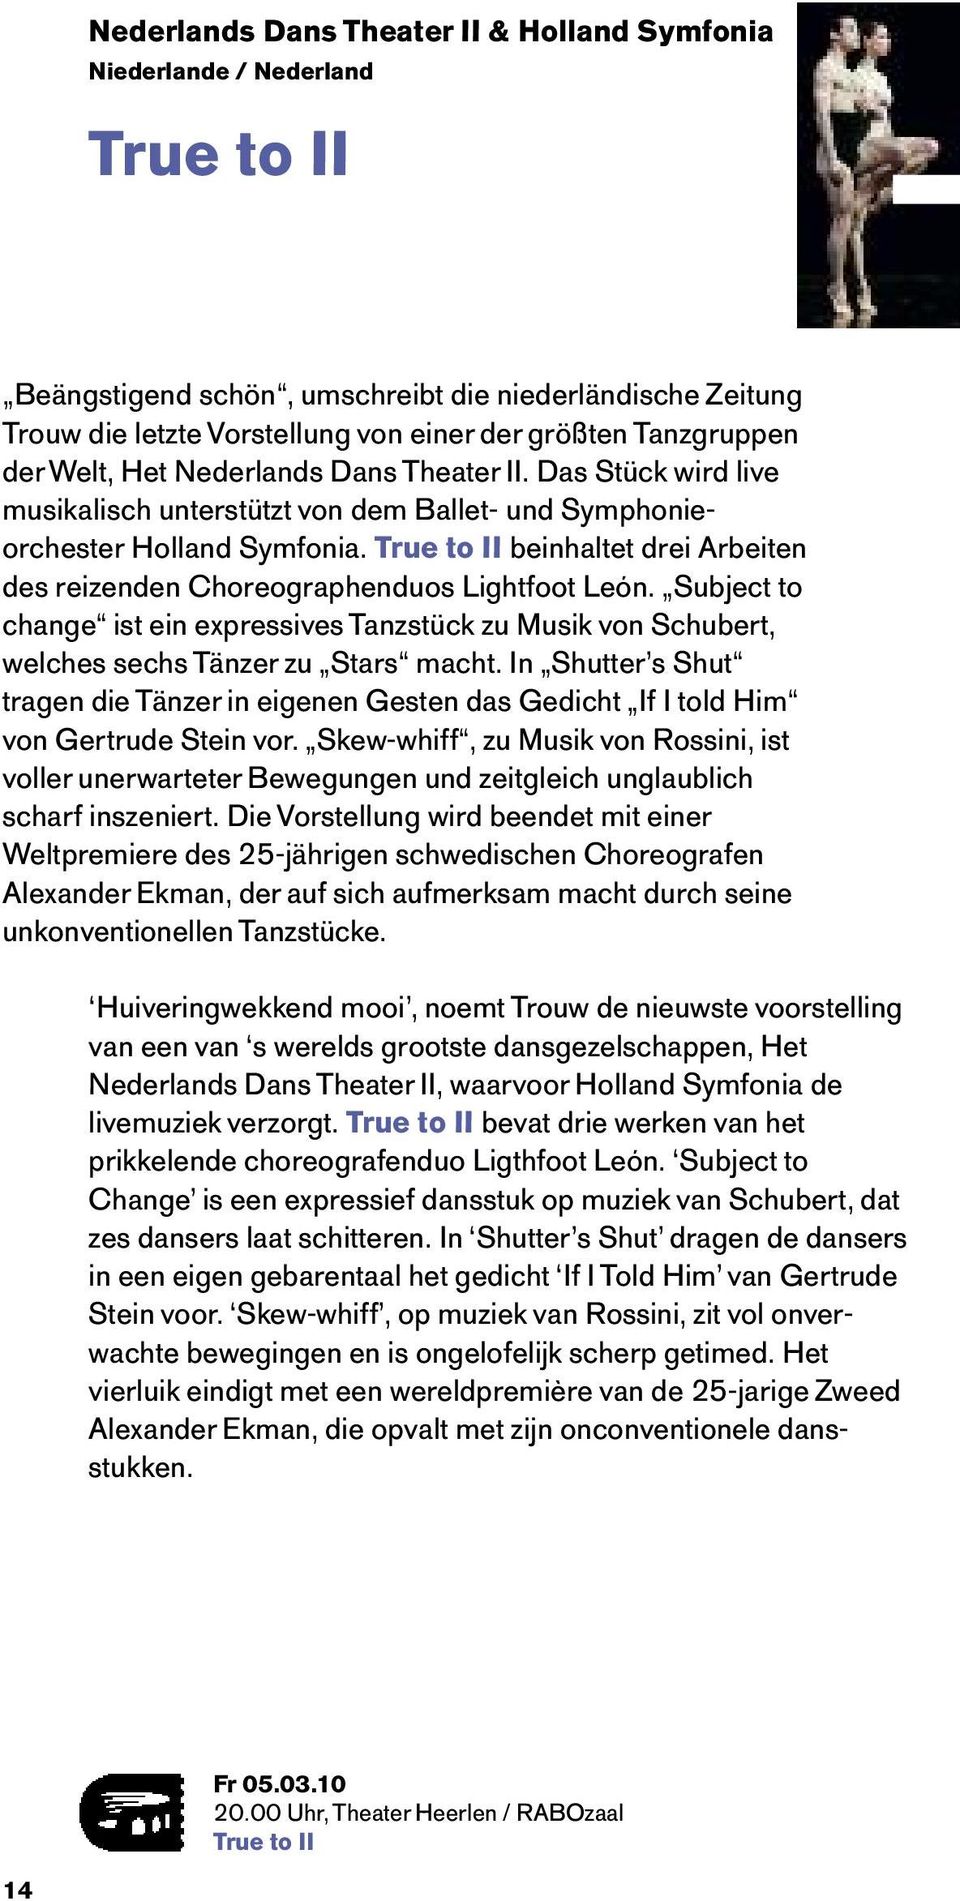 True to II beinhaltet drei Arbeiten des reizenden Choreographenduos Lightfoot León. Subject to change ist ein expressives Tanzstück zu Musik von Schubert, welches sechs Tänzer zu Stars macht.